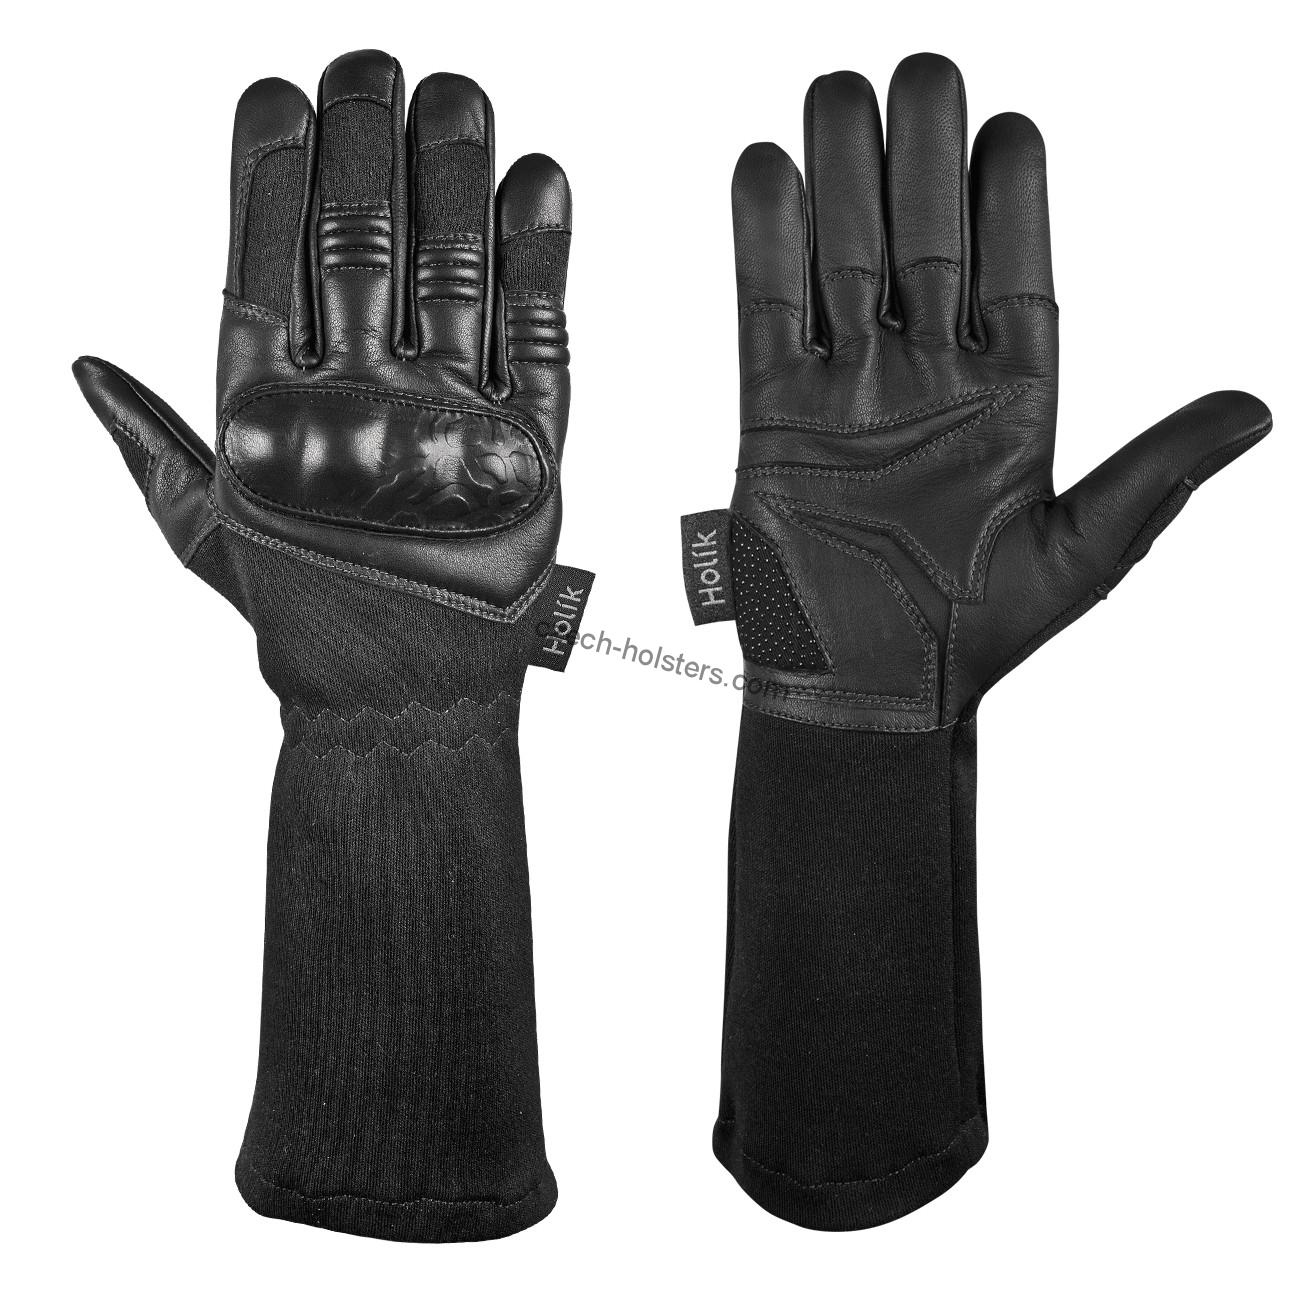 Heavy Duty Gloves Montana Nomex - Black